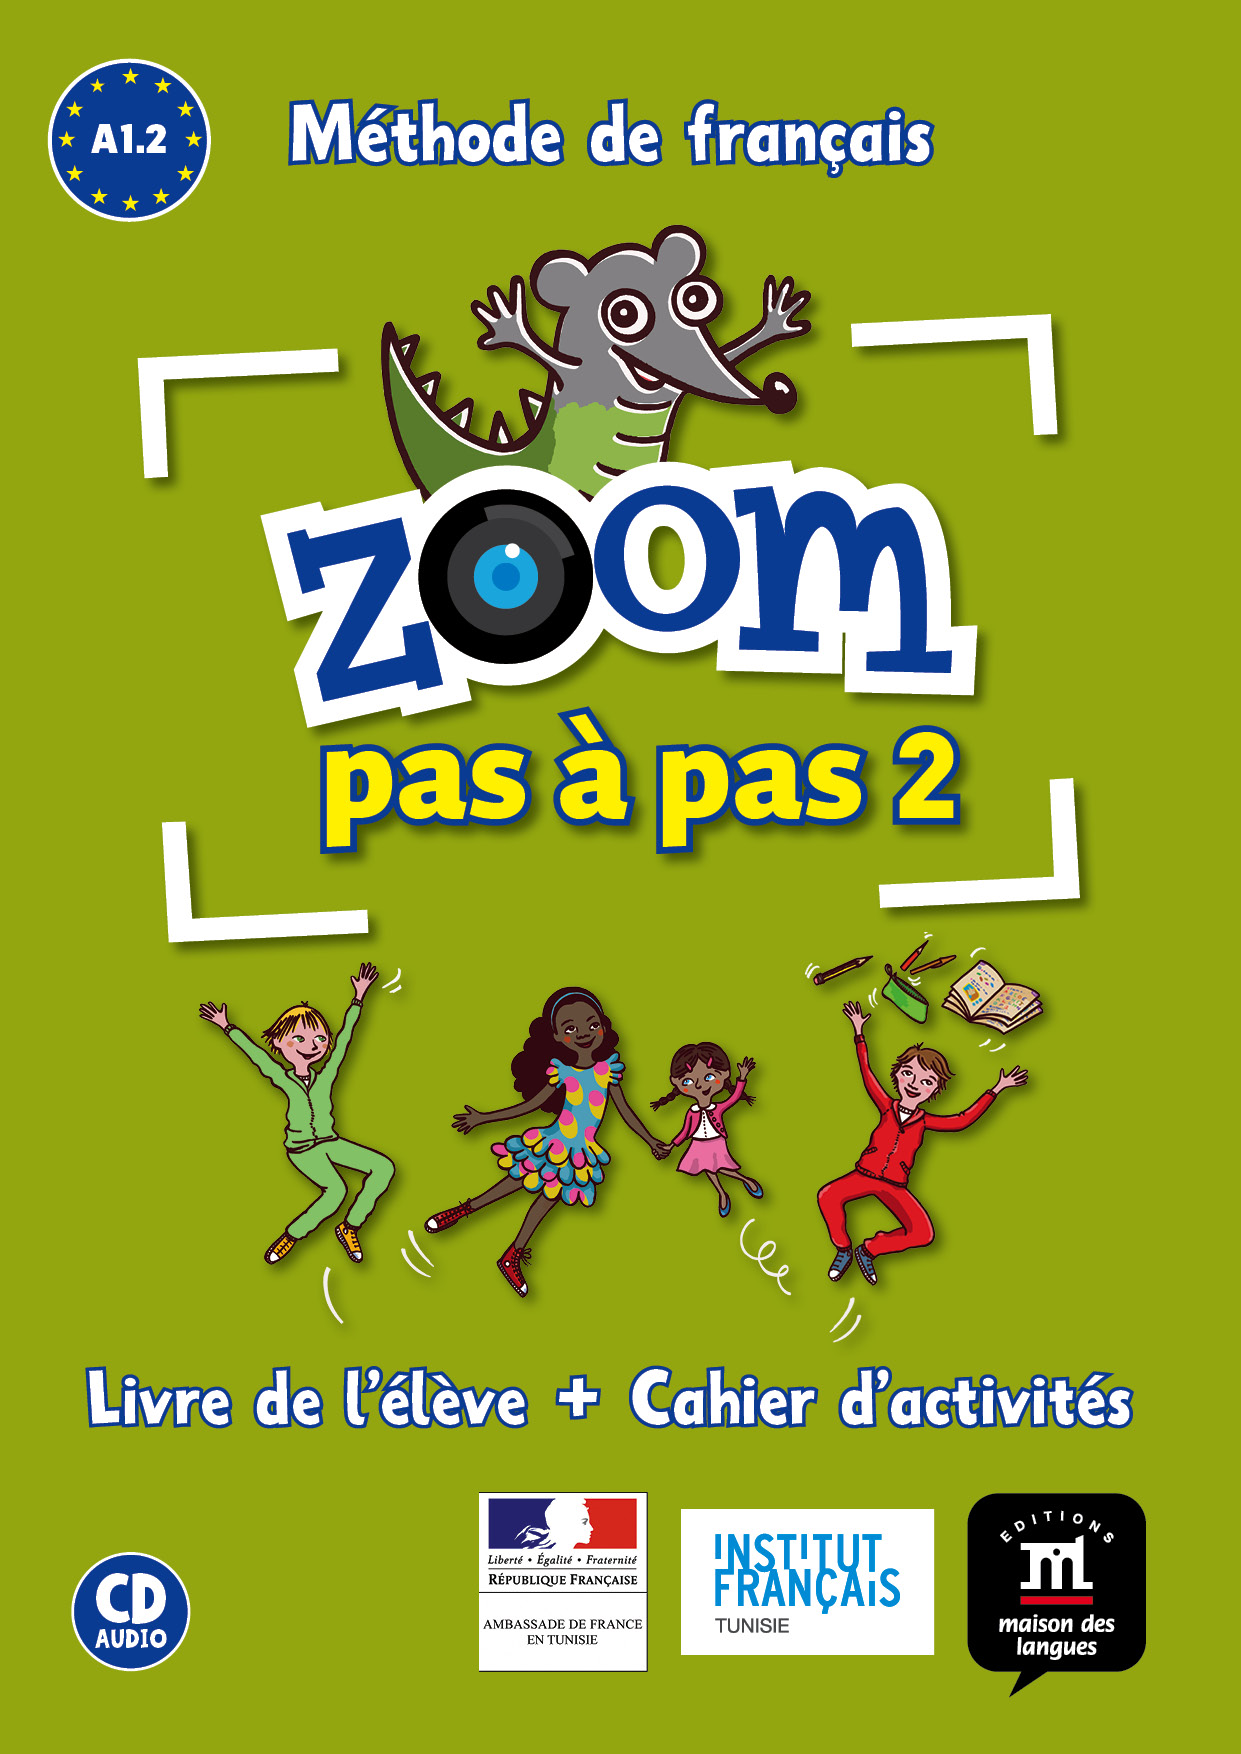 Cahier d'activités Zoom Prim 6